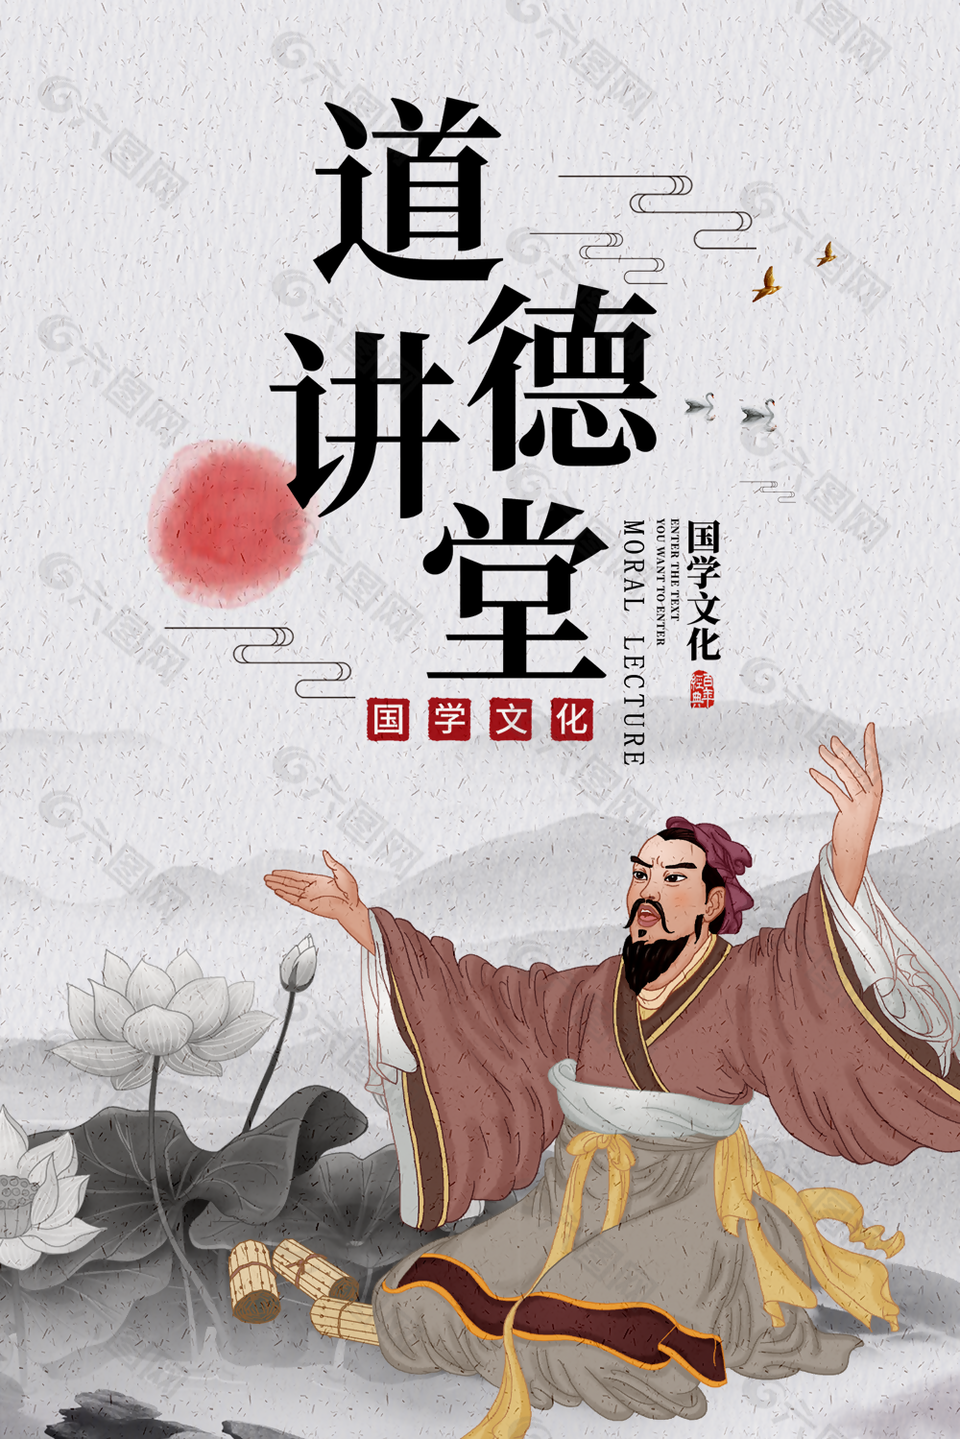 古典中国风道德讲堂国学文化宣传海报设计